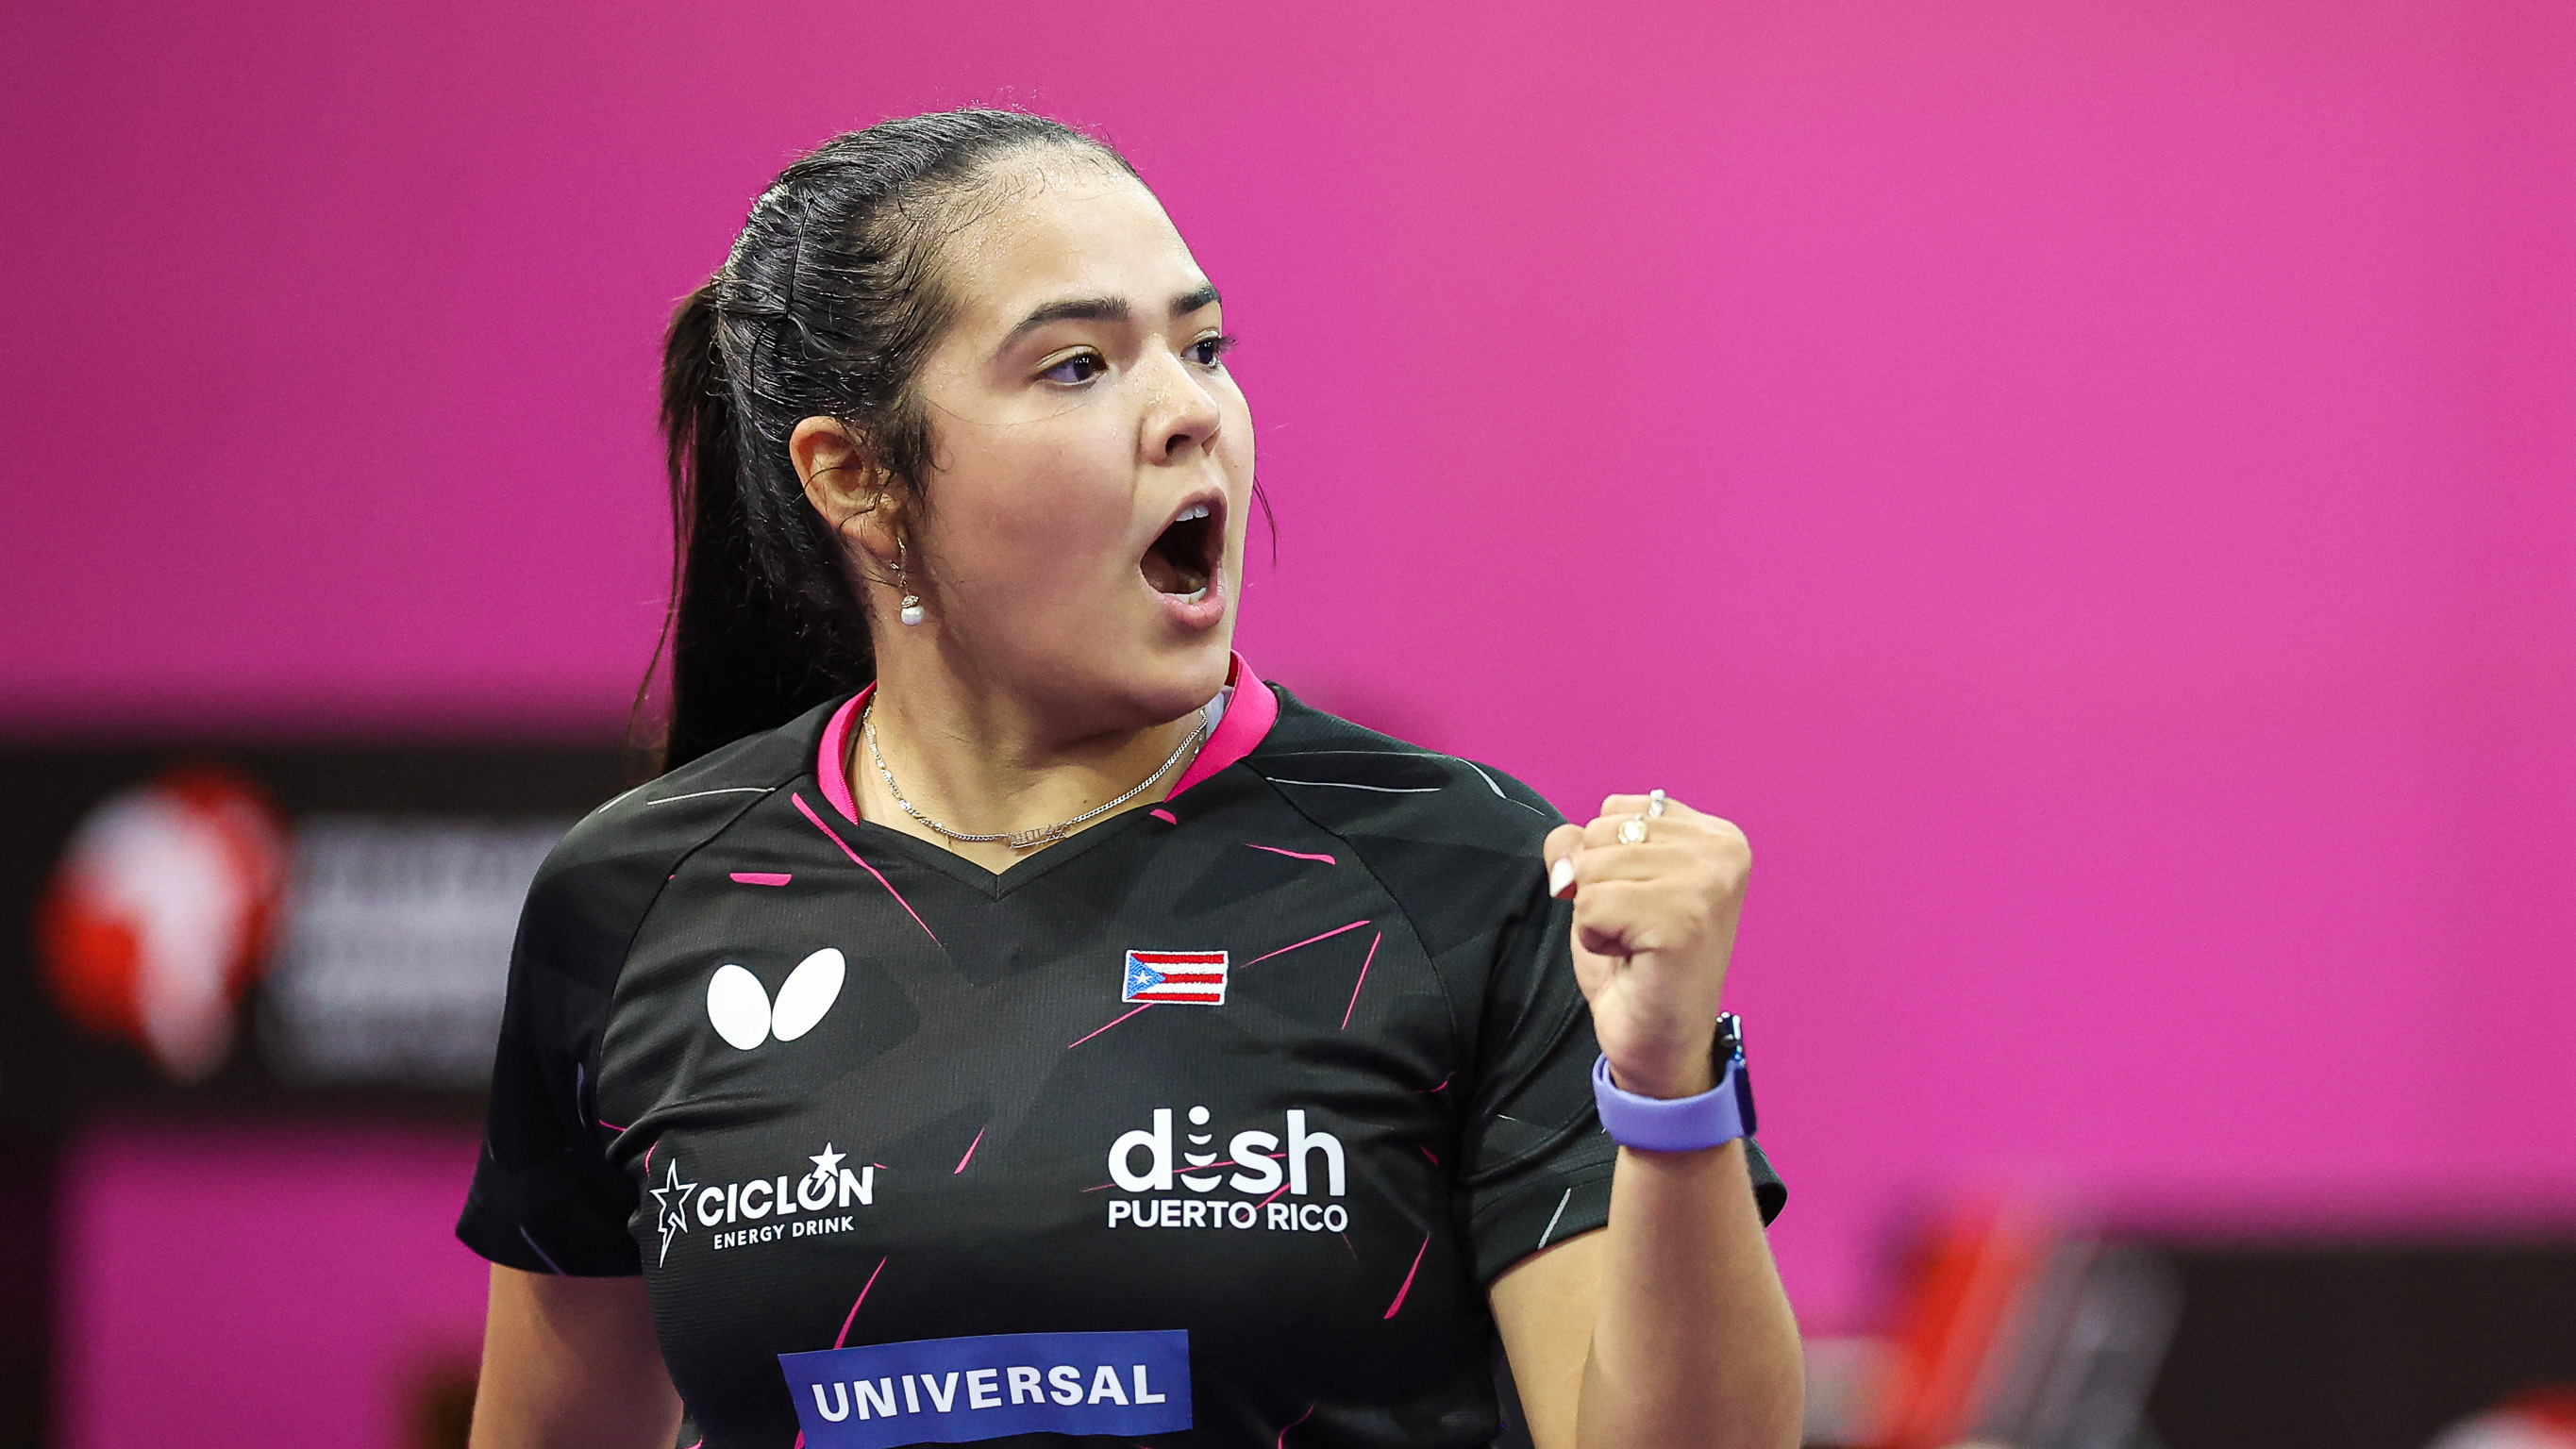 Adriana Diaz vincitrice dei Campionati Panamericani 2021